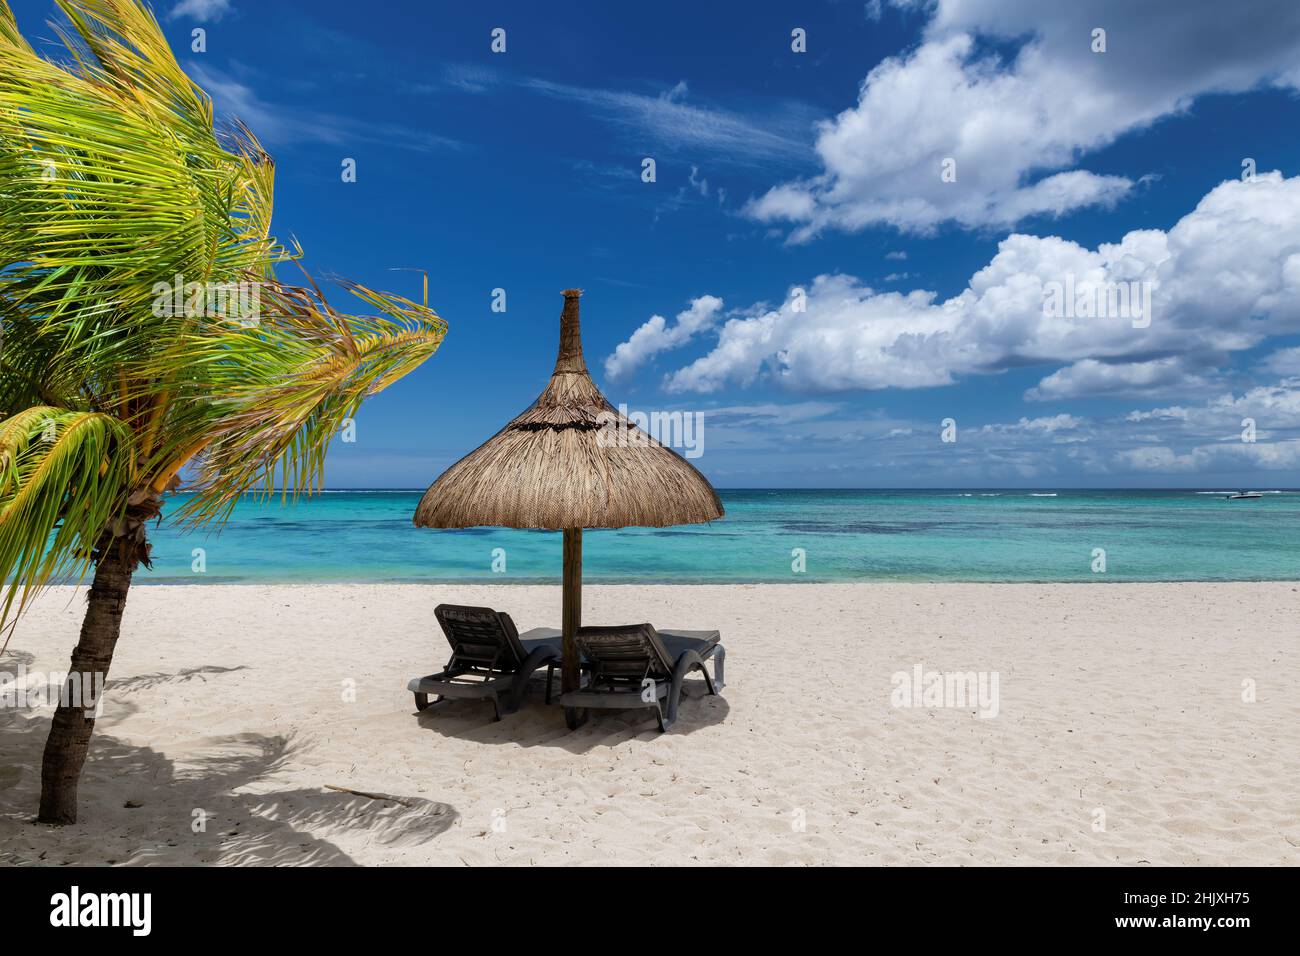 Spiaggia tropicale di sabbia bianca con palme da cocco e il mare turchese sull'isola dei Caraibi. Foto Stock